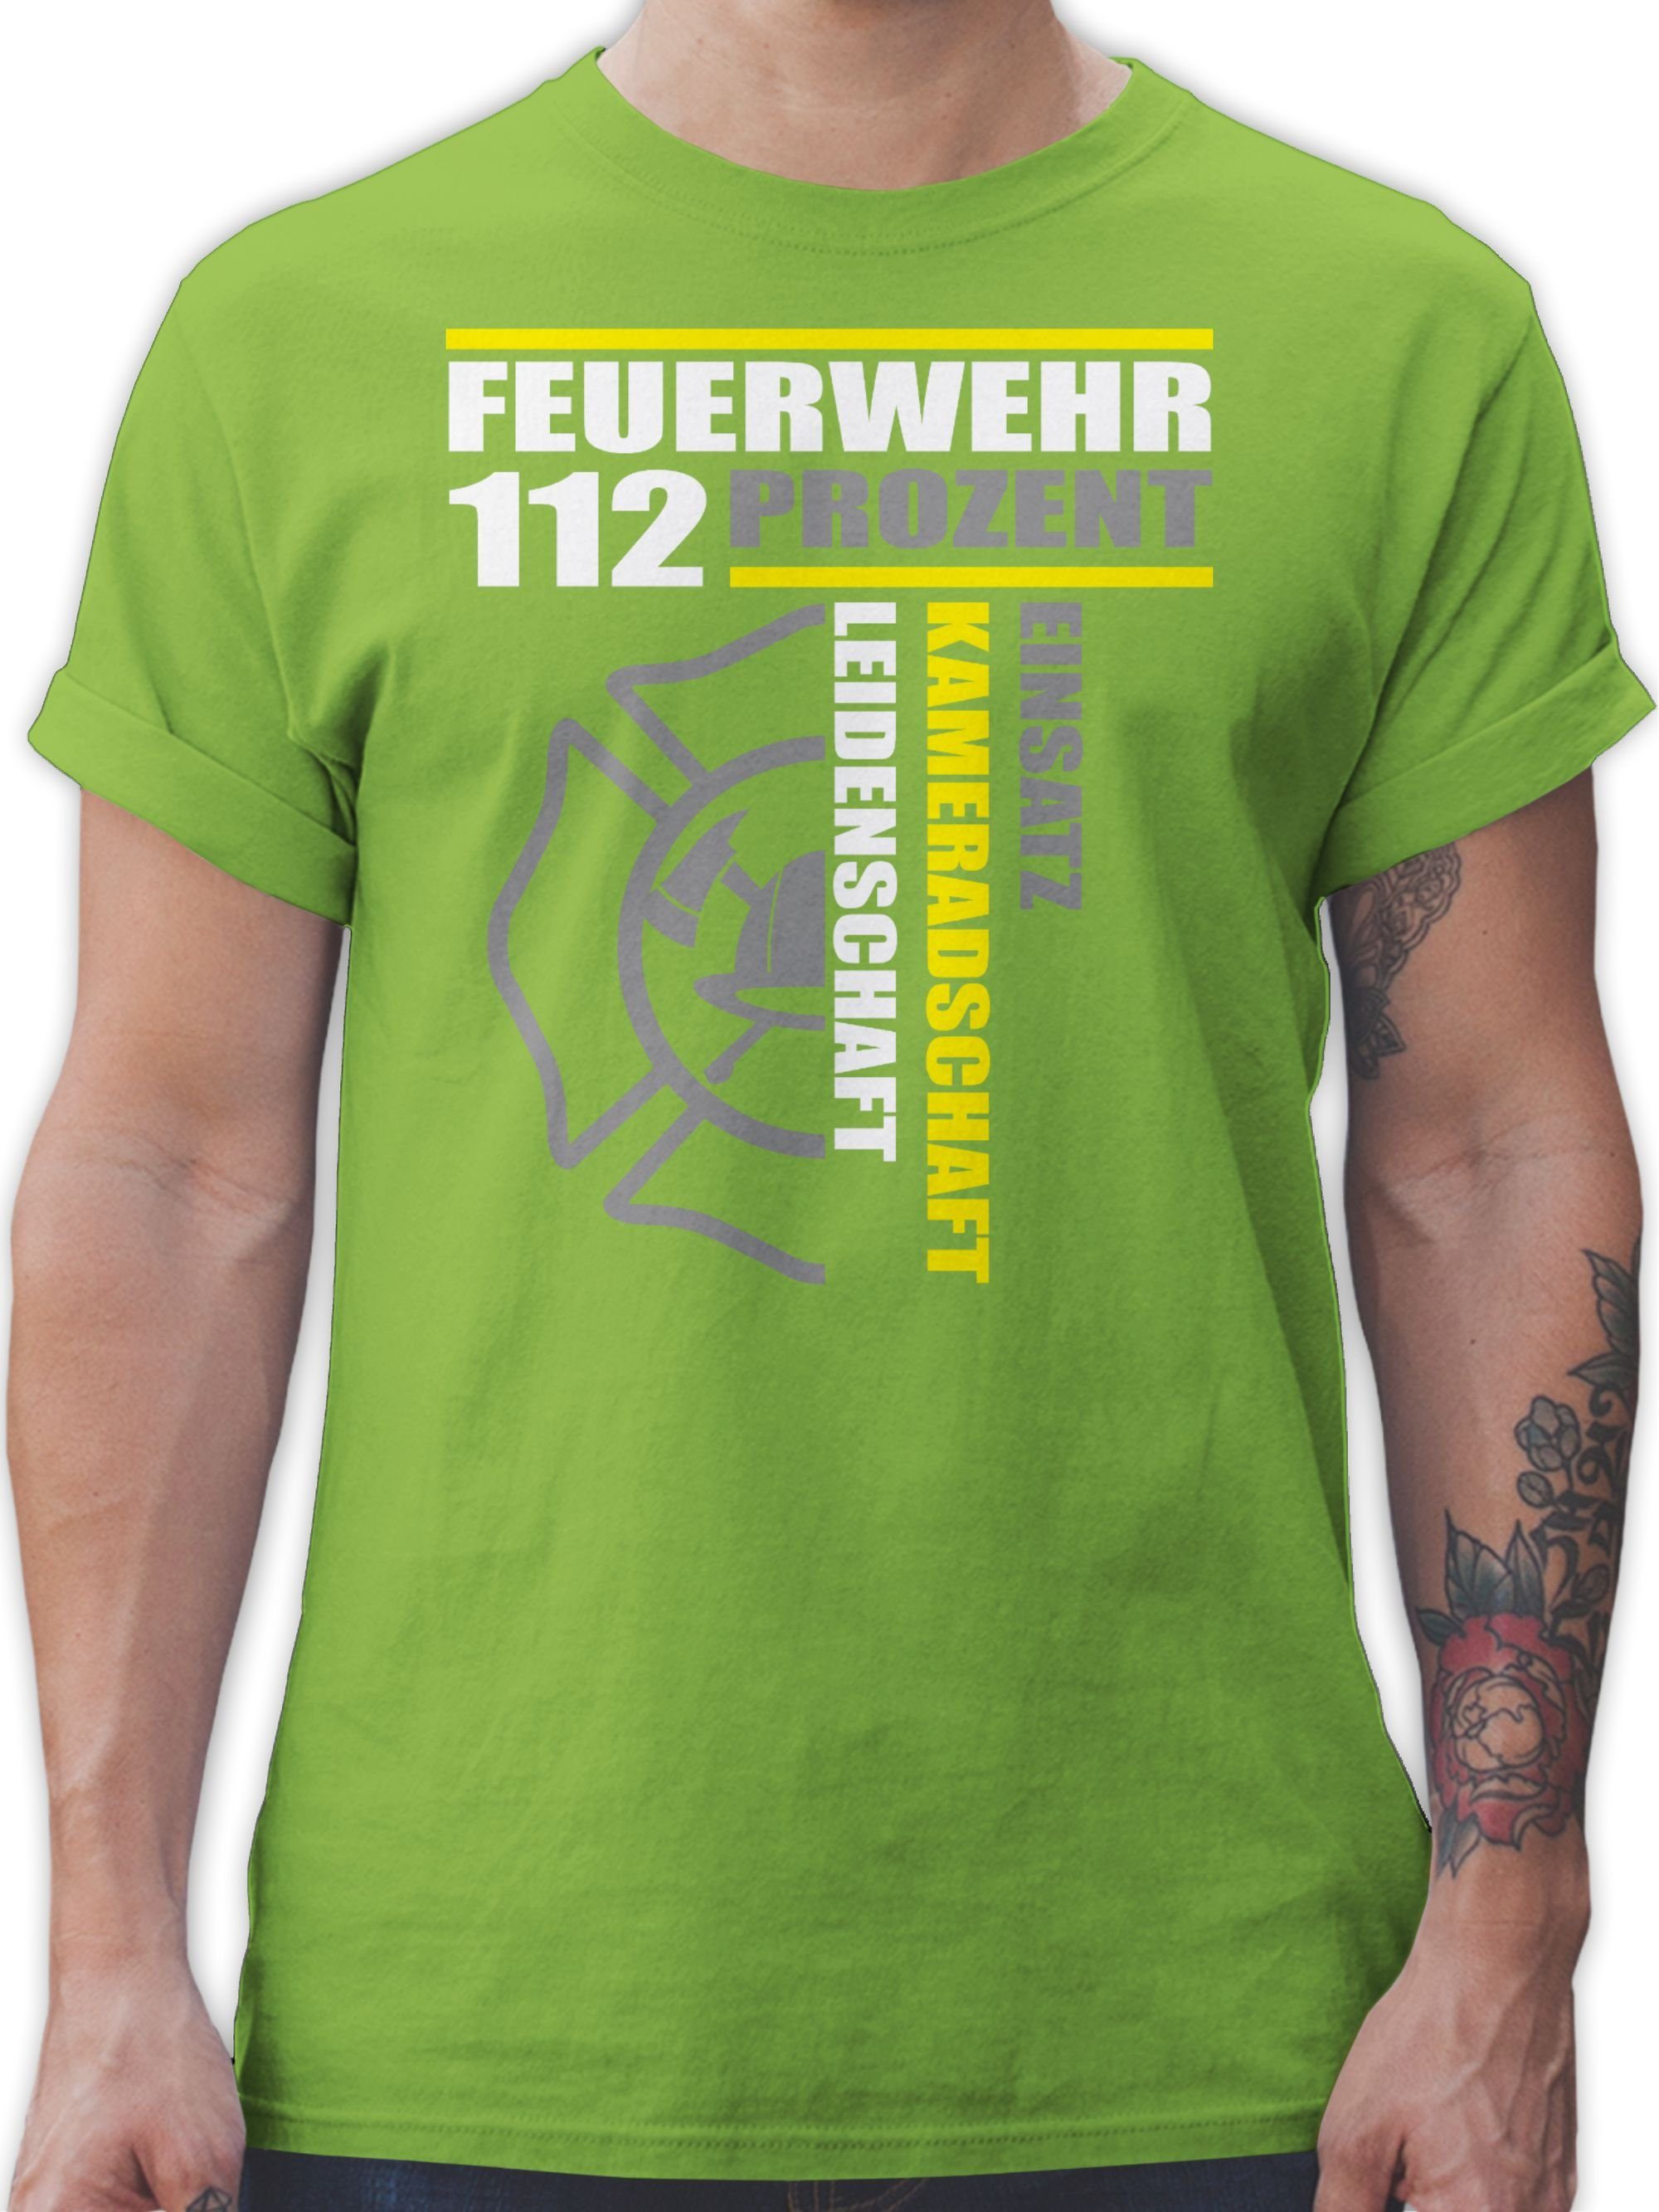 Shirtracer T-Shirt Feuerwehr 112 Prozent - Einsatz Kameradschaft Leidenschaft - Freiwilli Feuerwehr 03 Hellgrün